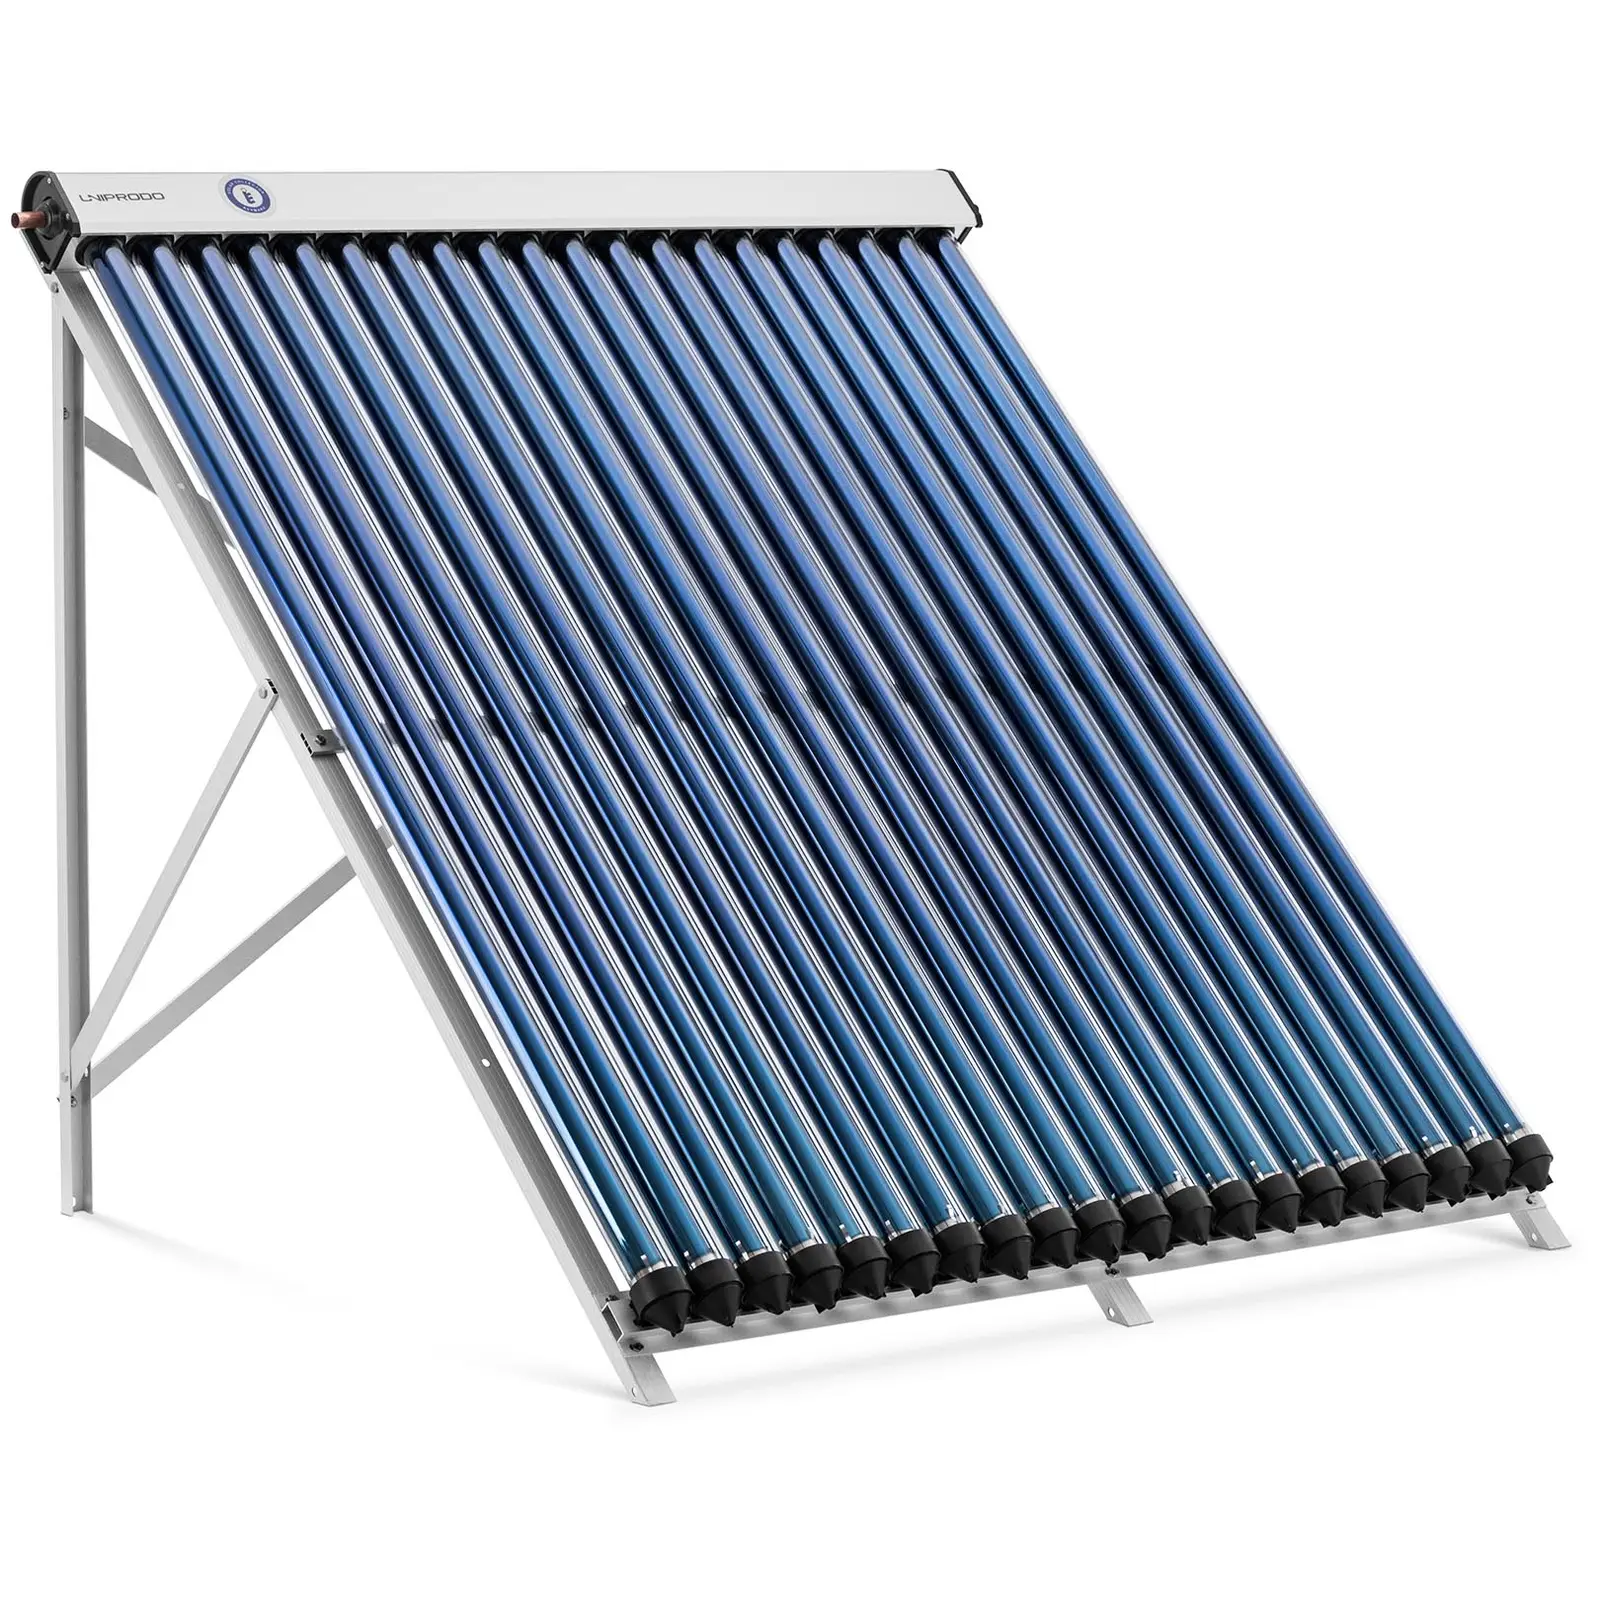 Pannello solare termico - {{number_of_tube_attachments}} tubi - 160 - 200 L - 1.6 m² - -45 - 90 °C